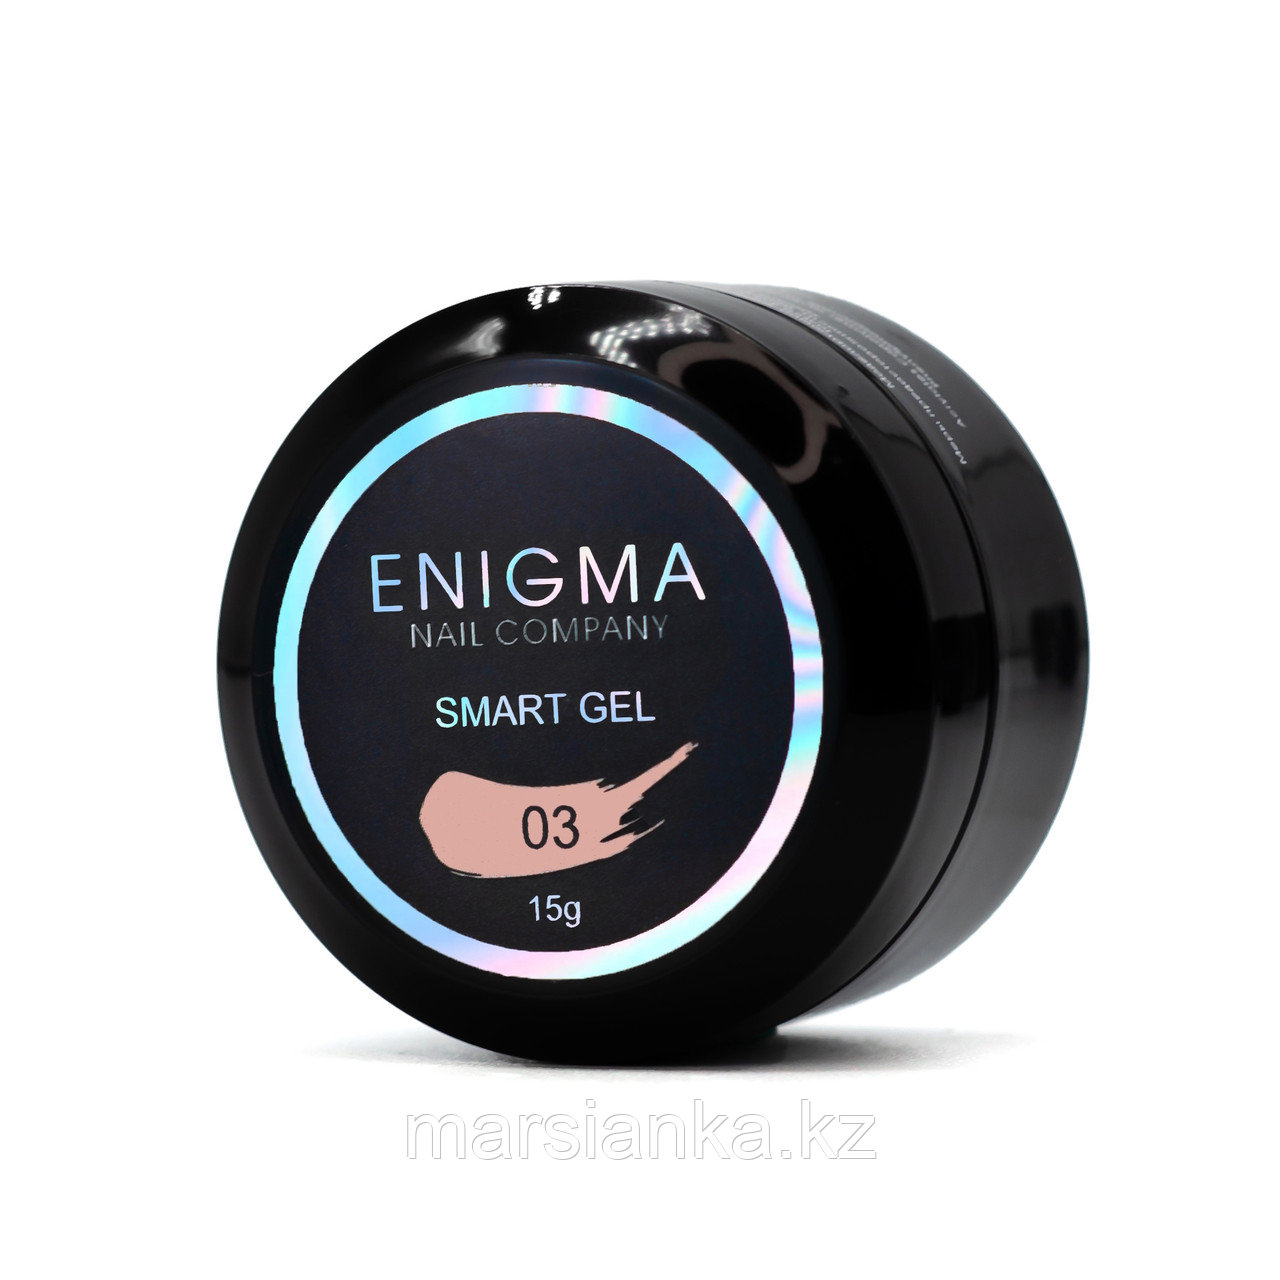 Жидкий бескислотный гель Enigma Smart gel #03, 15мл